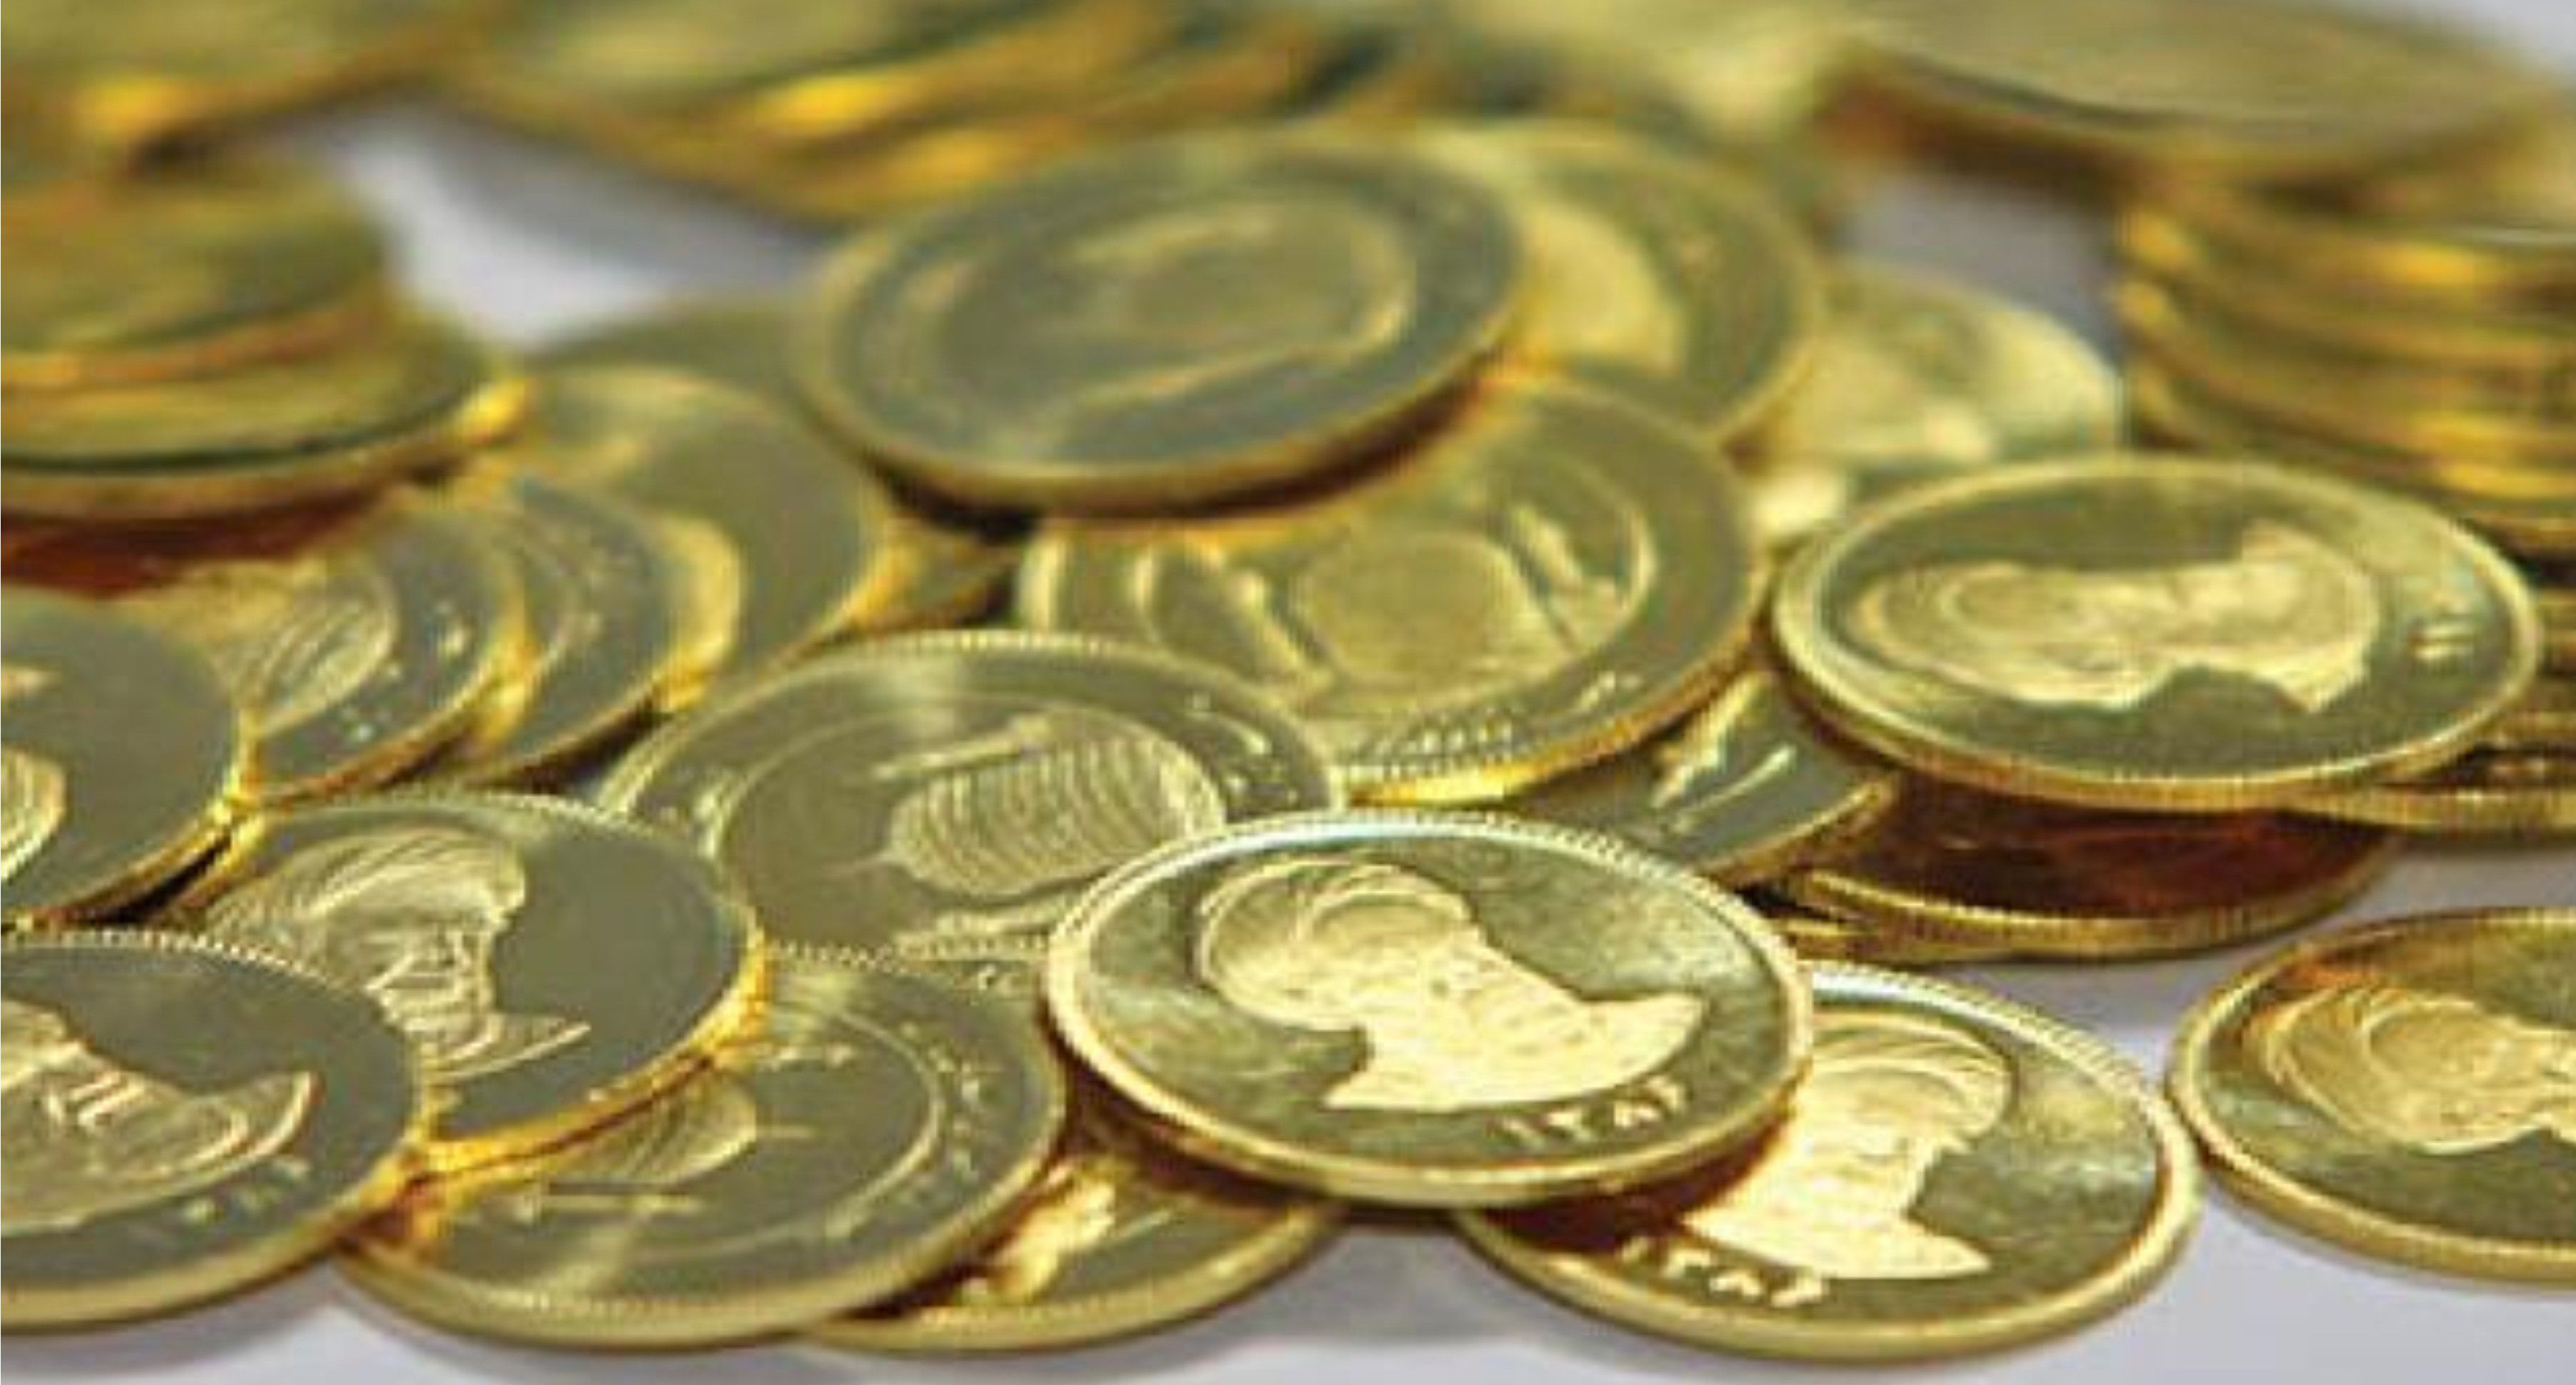 جدیدترین قیمت طلا و سکه در اولین روز مرداد/ تقاضا برای خرید سکه کاهش یافت